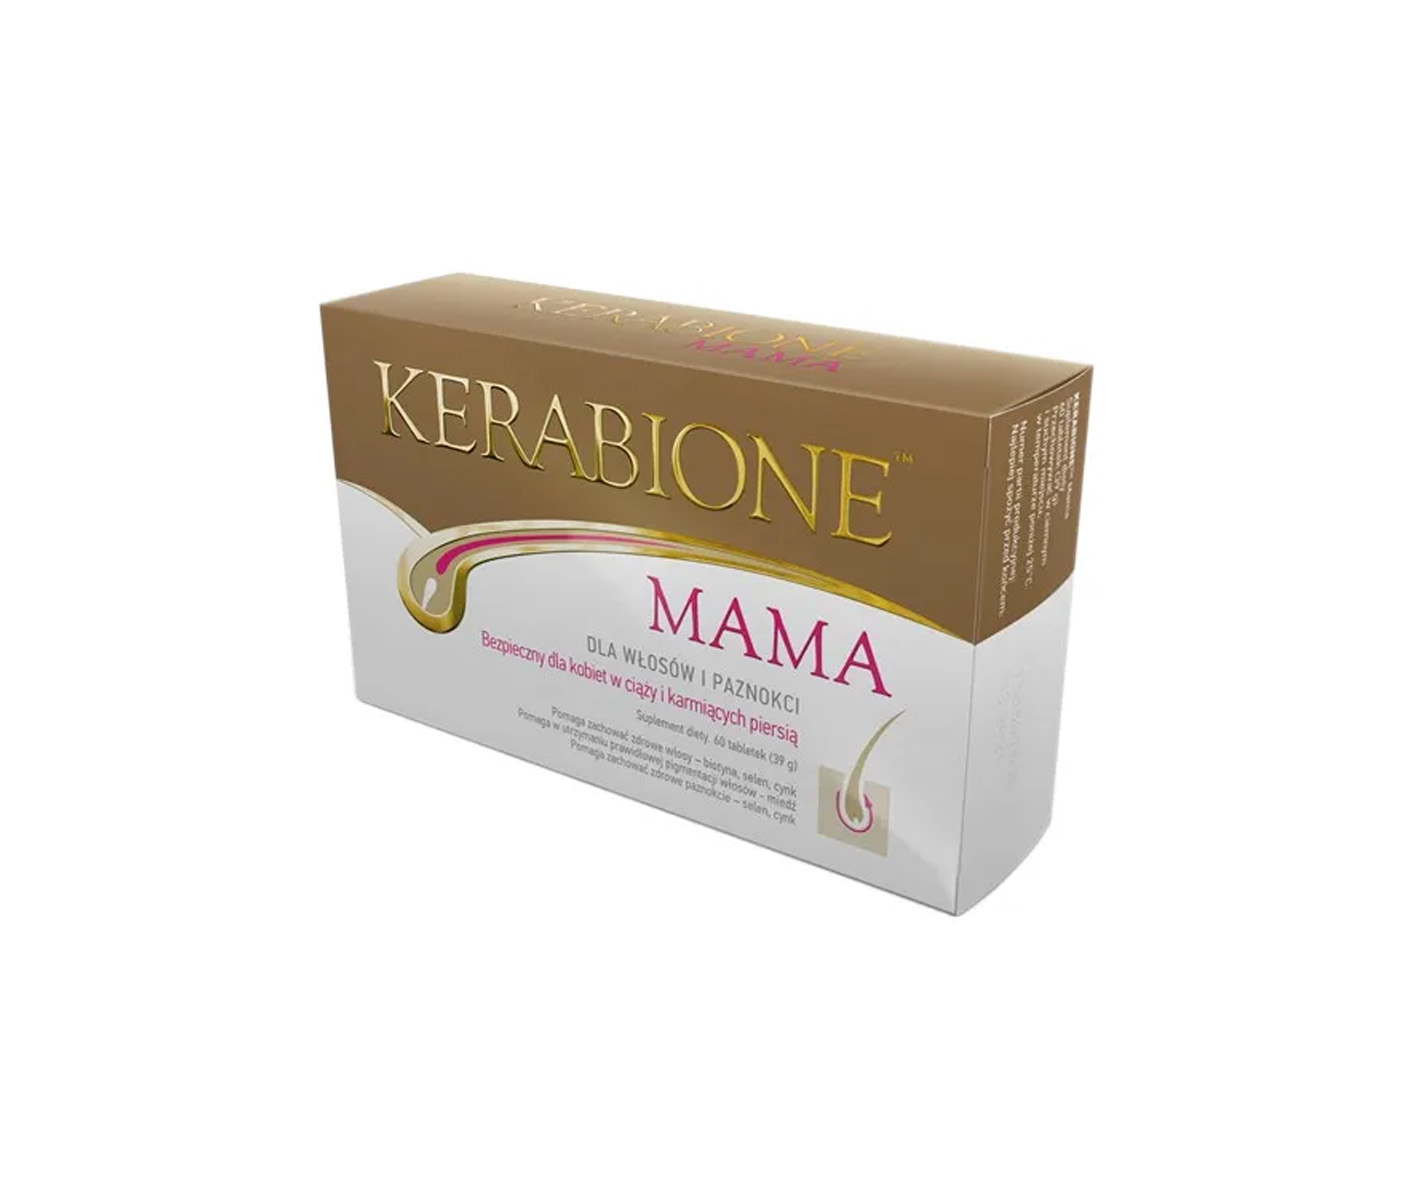 Kerabione Mama, complemento alimenticio para el cabello después del embarazo